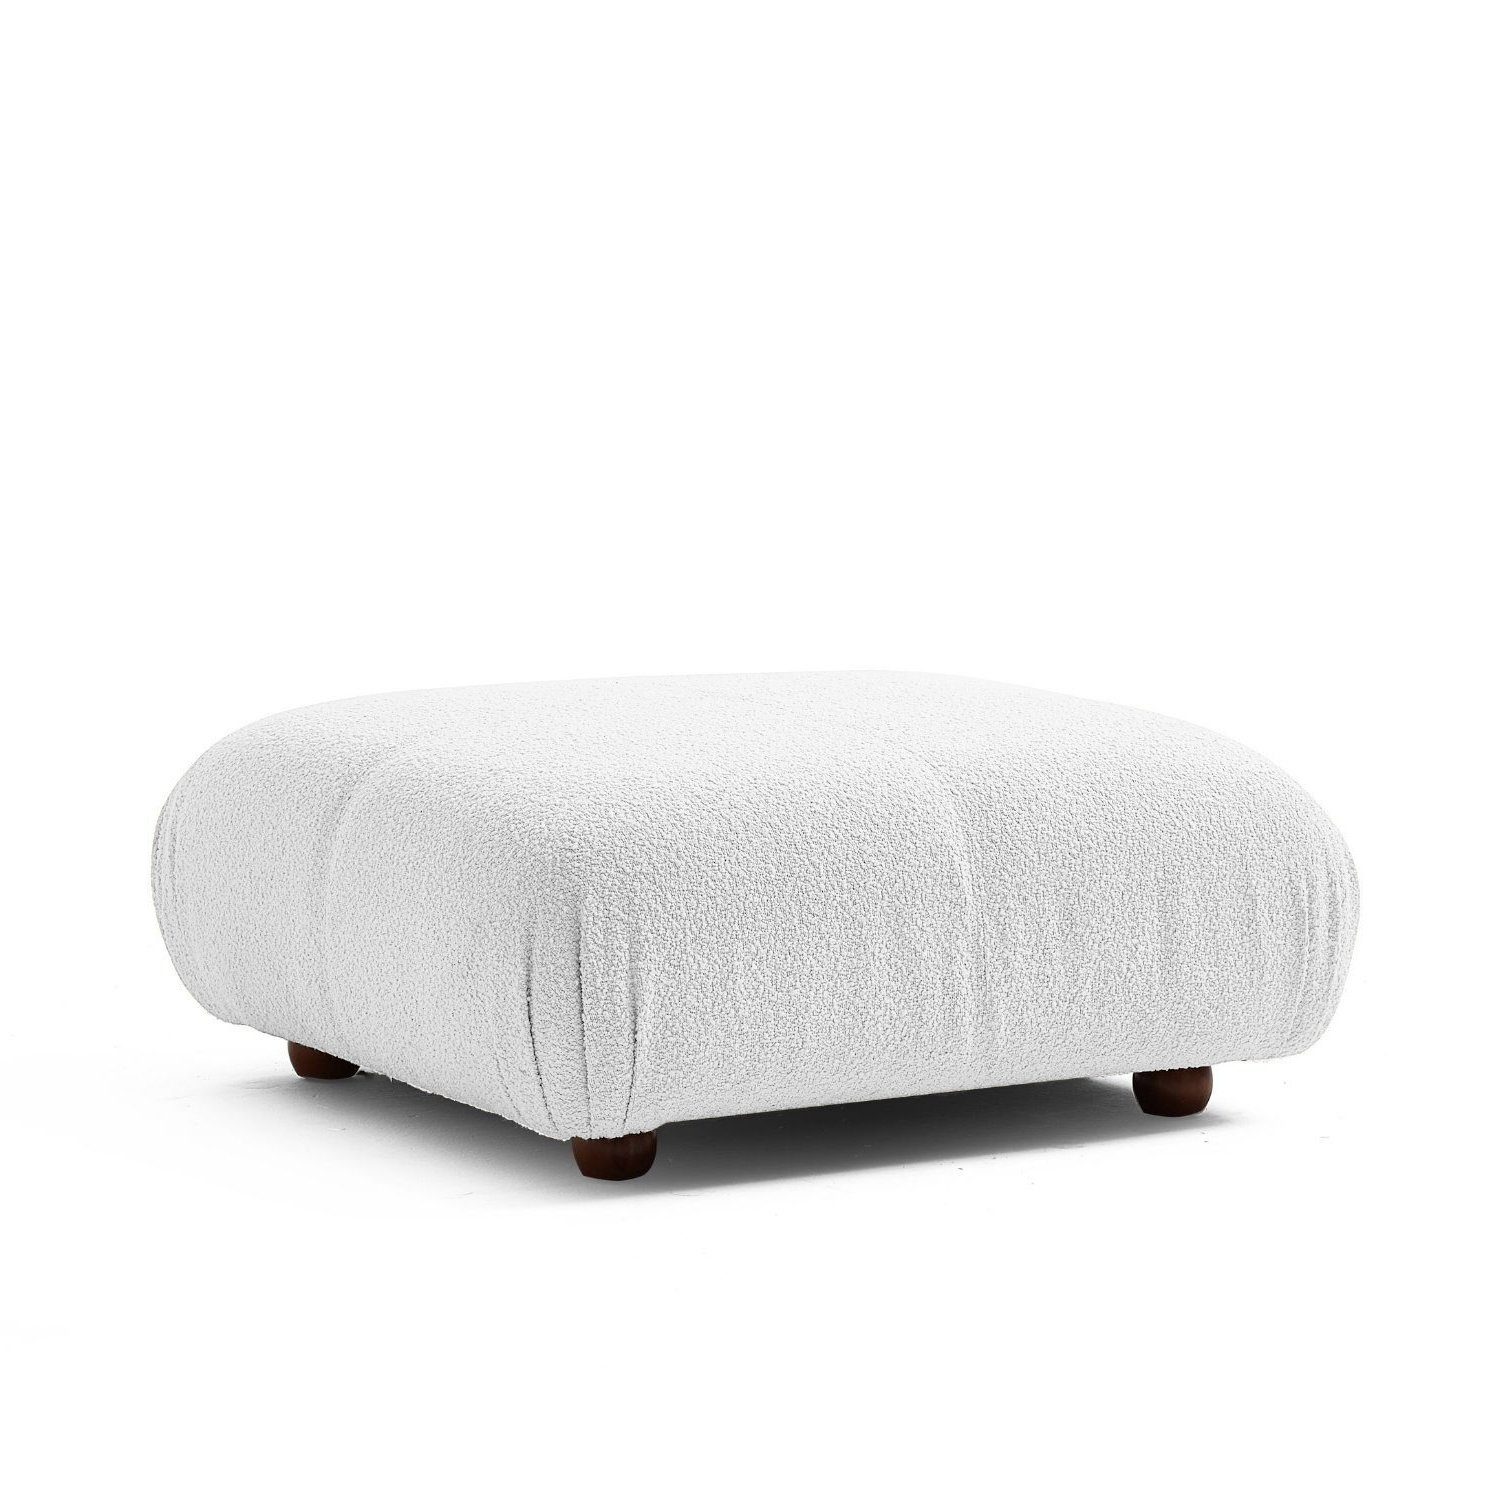 Preis neueste im Generation aus Knuffiges Touch Weiß-Lieferung enthalten! Sitzmöbel und Sofa me Aufbau Komfortschaum